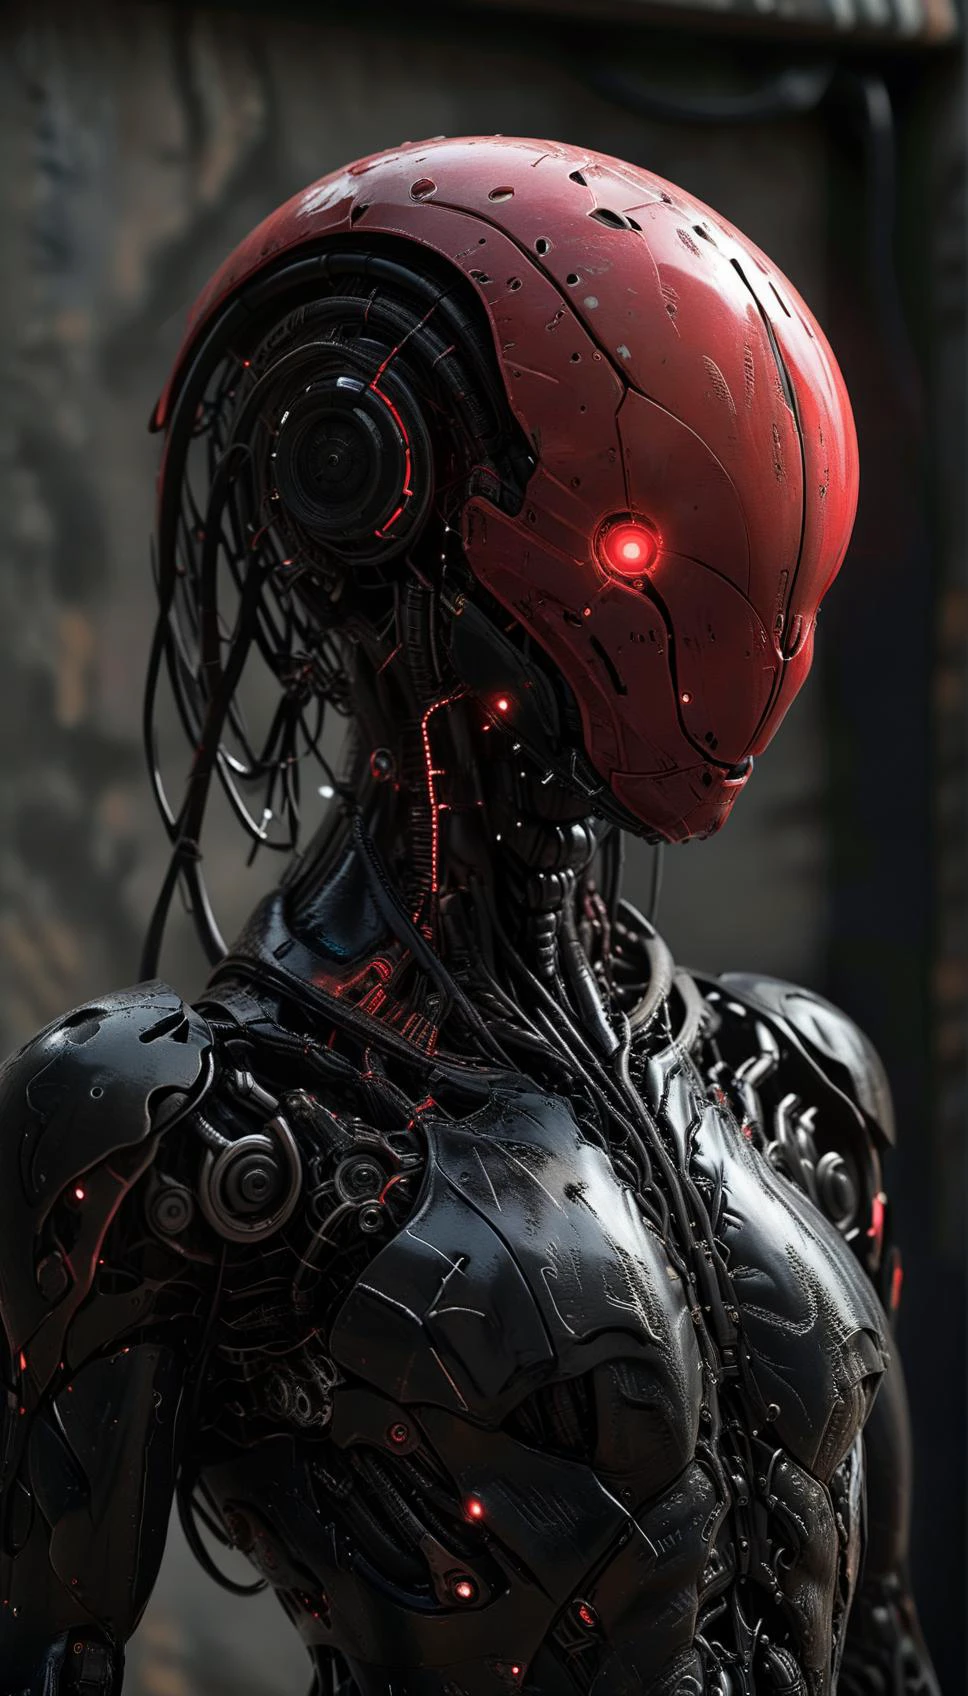 全彩 LED 灯,无脸,CYBOrG,H. r. 吉格风格,
赛博朋克风格的机器人,科幻,未来派,极简主义者,电影灯光,充足的光线,陶瓷风格外壳,光滑的表面,反光面,虚幻引擎,red and black shell,(全身:1.5),
超现实的幻觉,错综复杂ly detailed sharp focus,数字艺术,完美构图,漂亮 详细,错综复杂,ArtStation 上流行极其精细的 Octane 渲染,8K艺术摄影,photo实际的 concept,贝壳上有 Eve 的涂鸦,(photo实际的, 实际的:1.2),